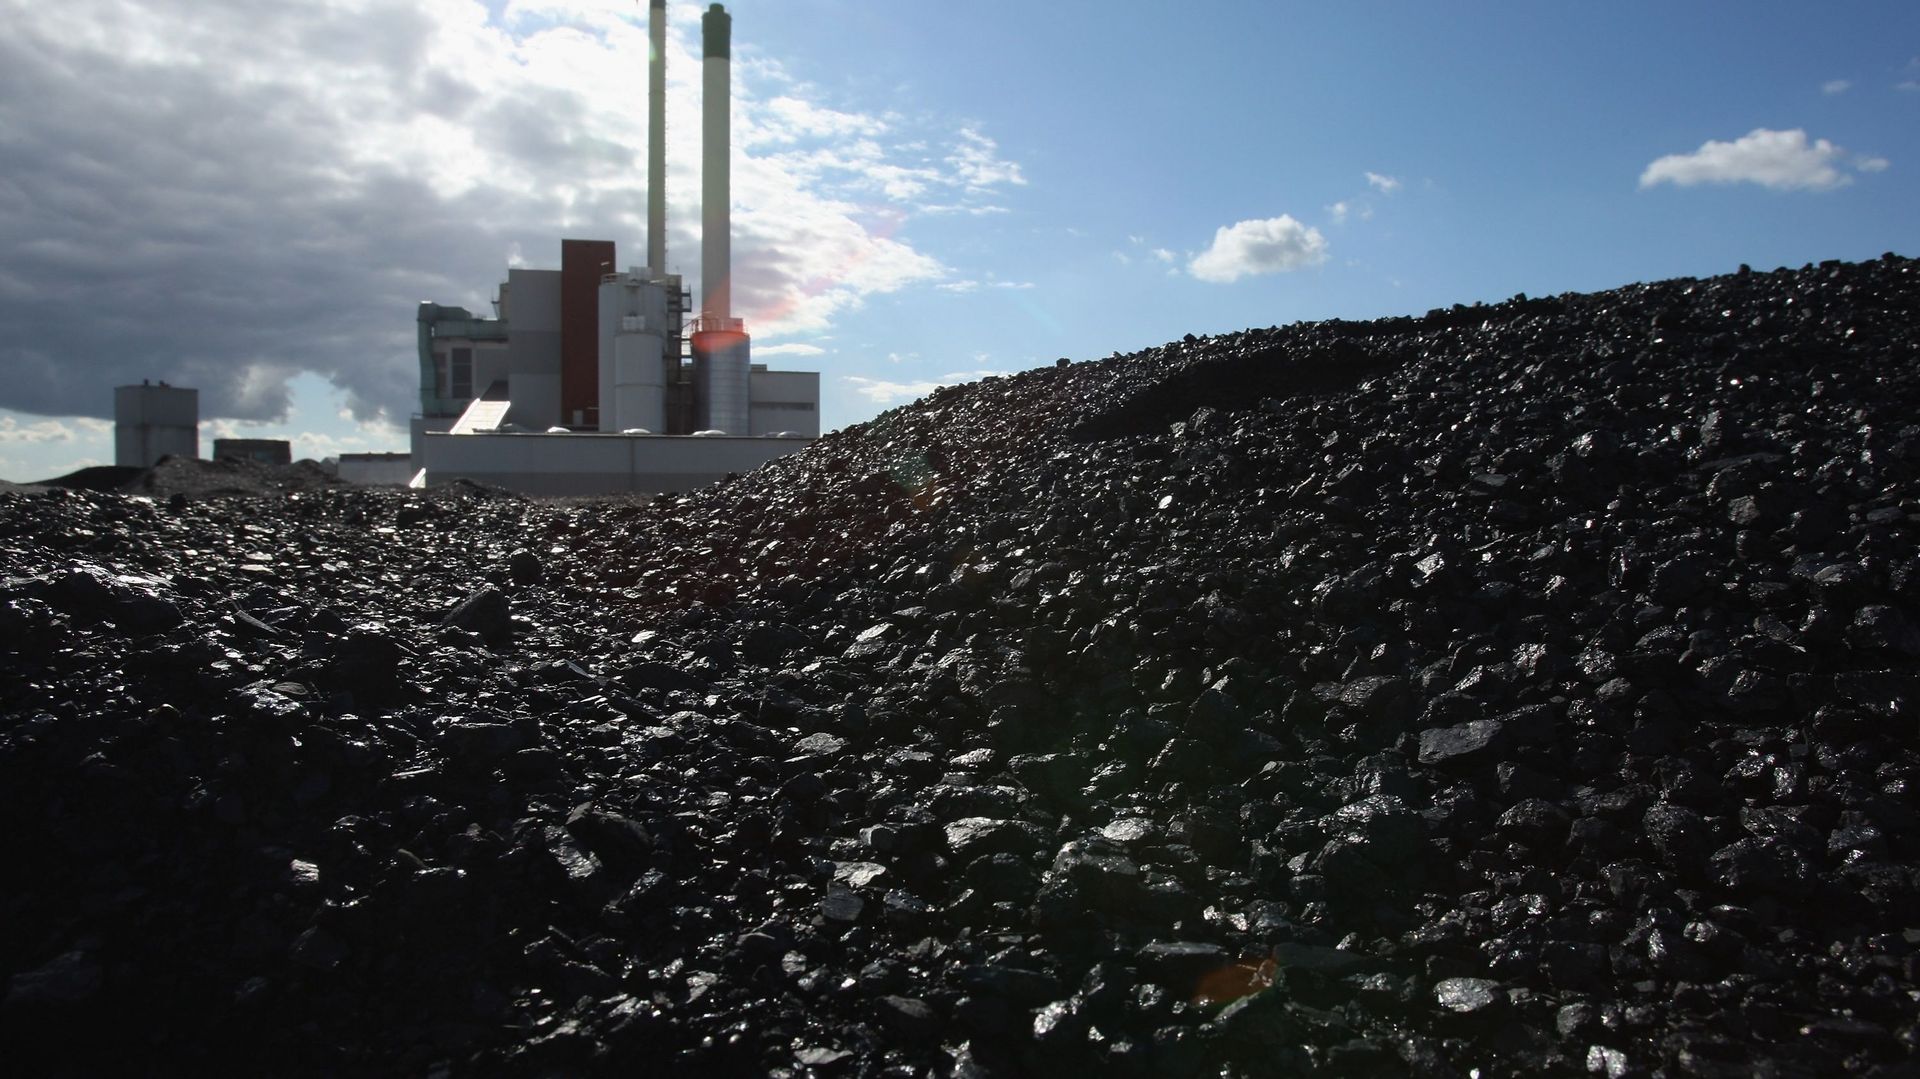 La centrale électrique à charbon et à déchets de Statdtwerke Nuemuenster se trouvant derrière un monticule de charbon, le 3 août 2007 à Nuemuenster, en Allemagne.